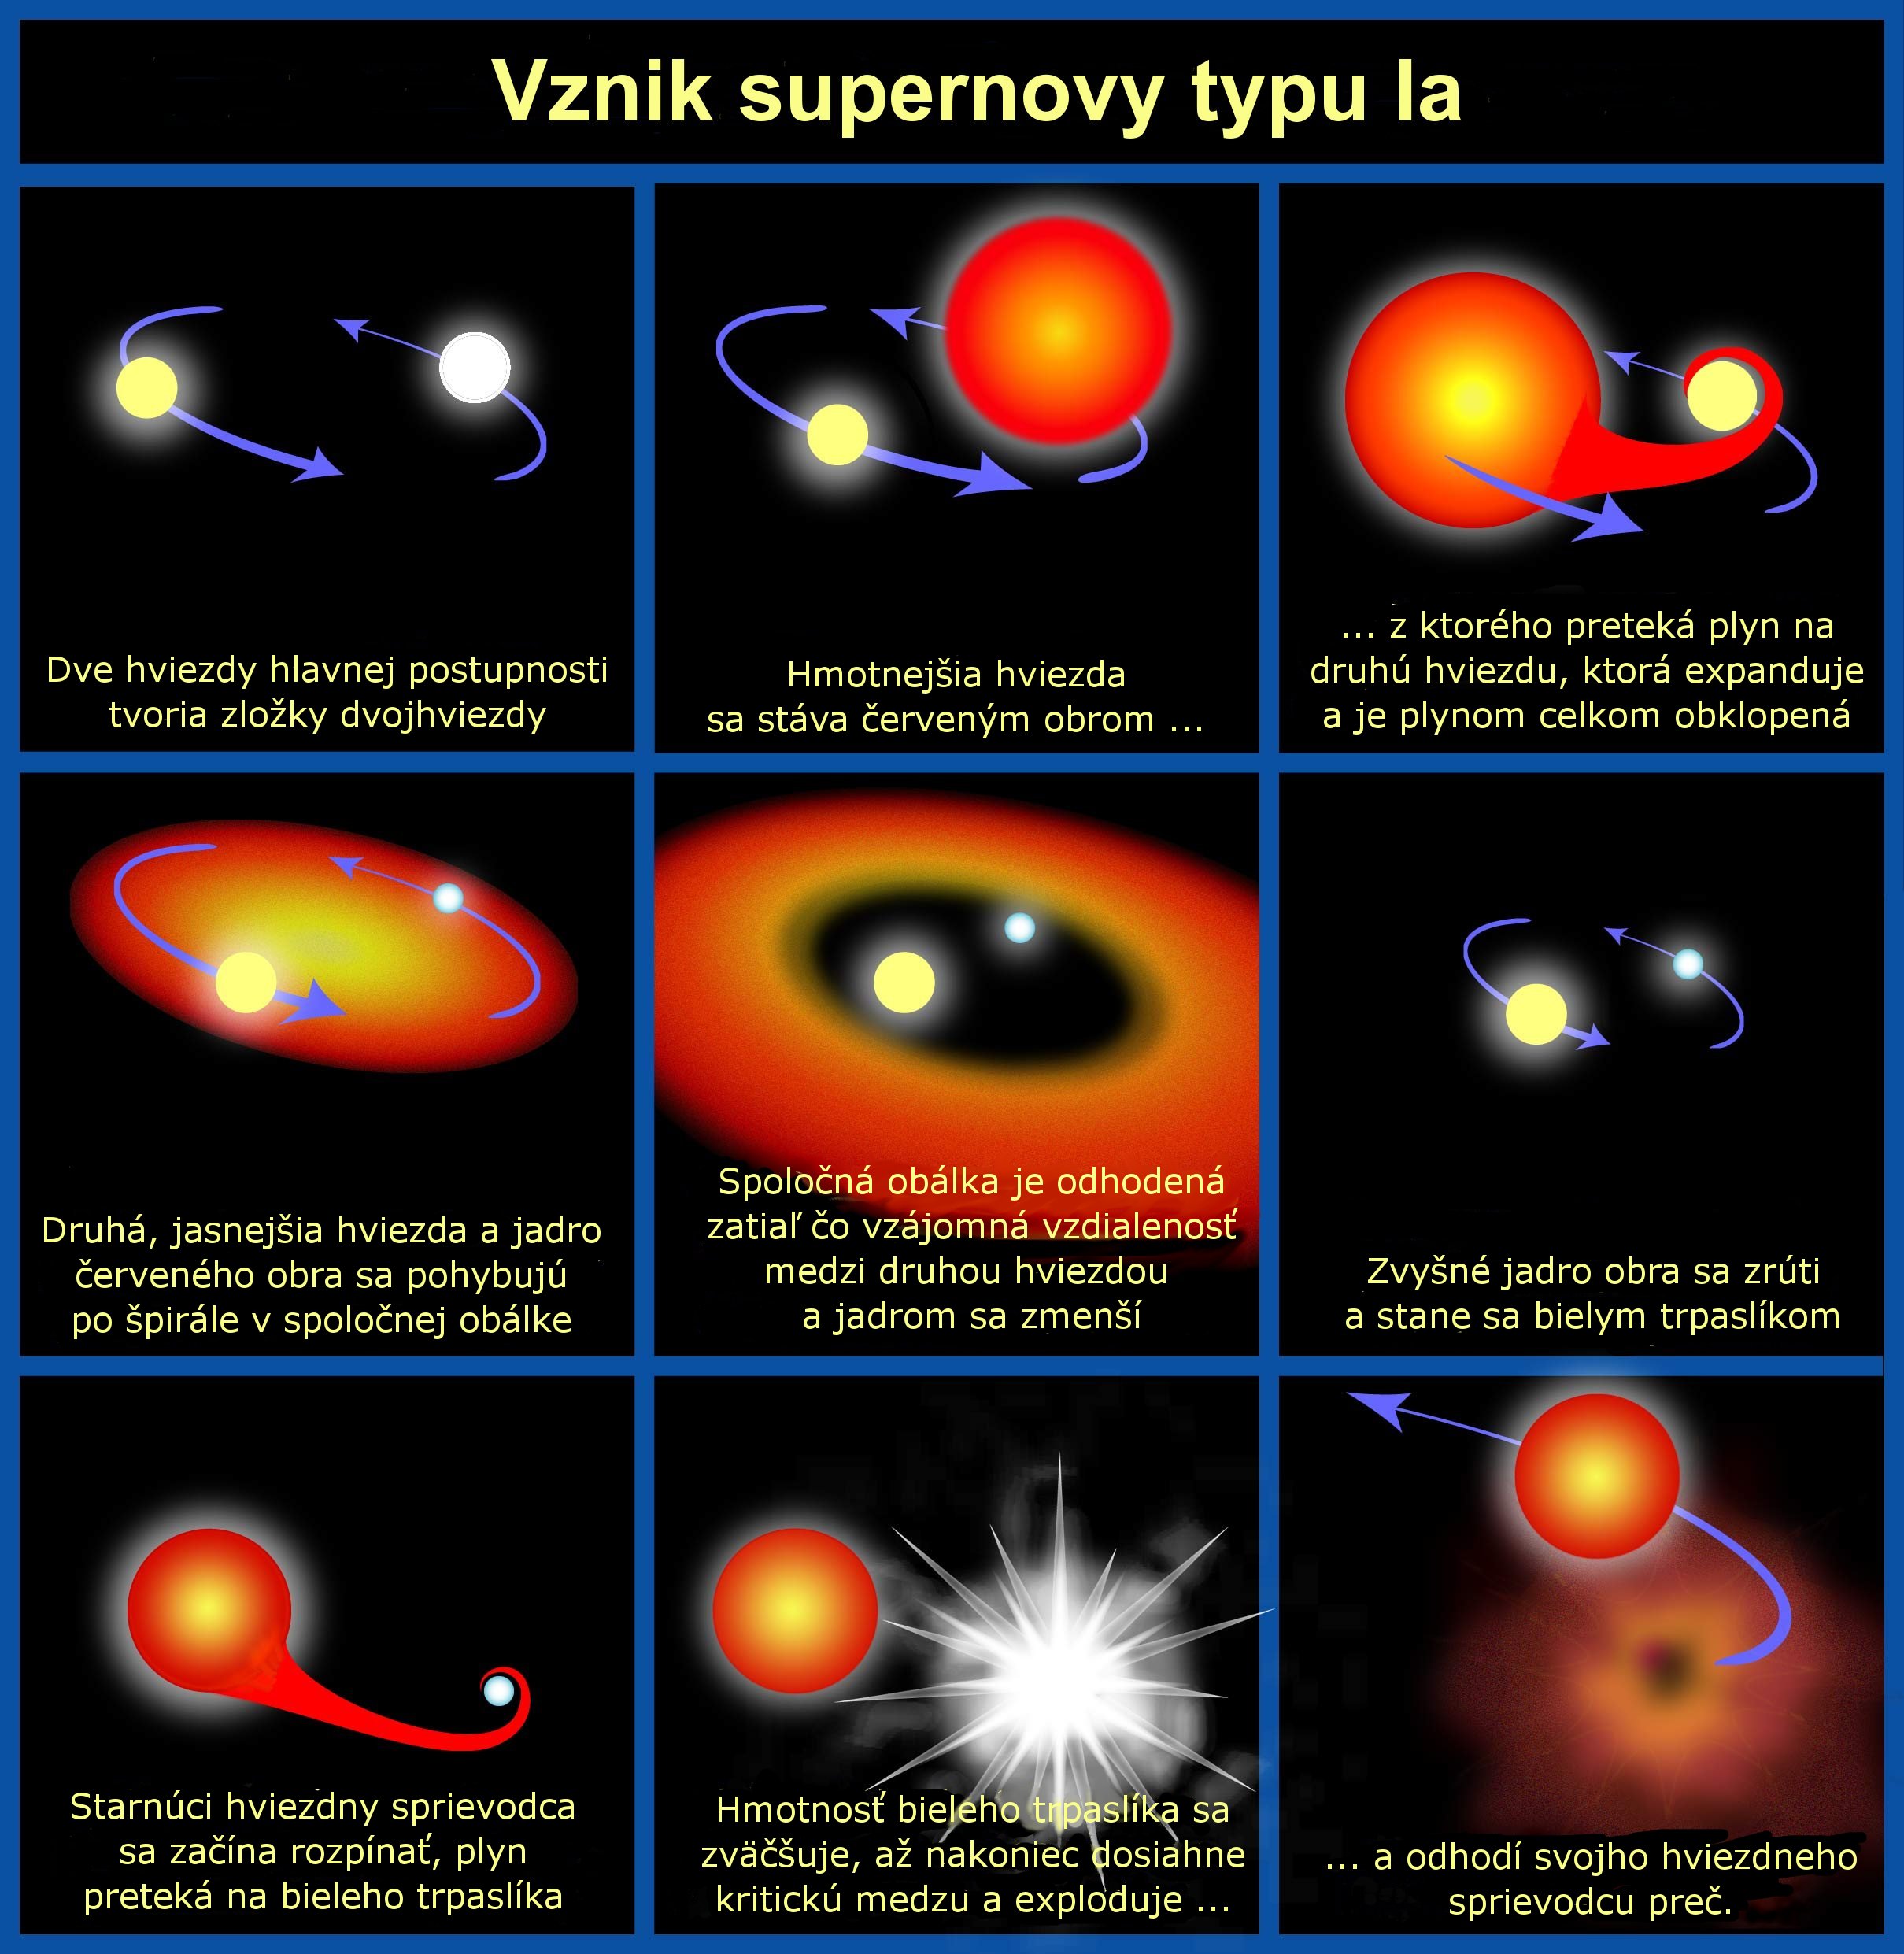 Progenitor of type Ia supernova sk